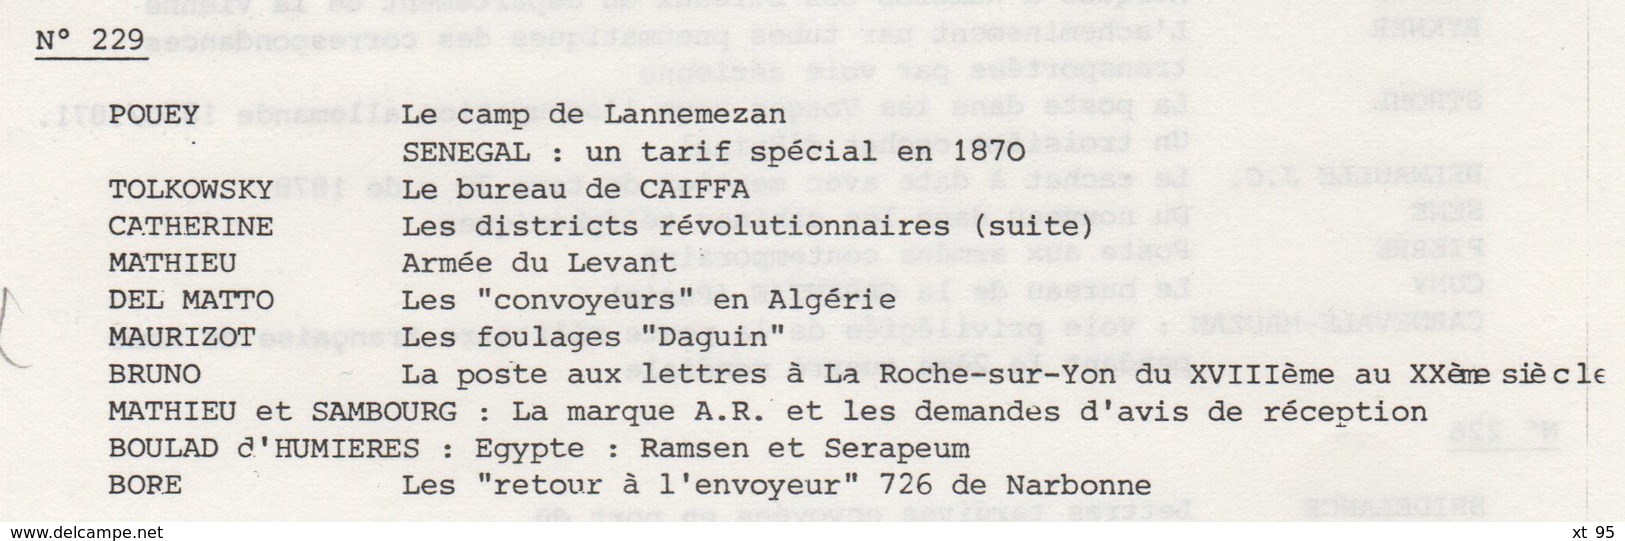 Les Feuilles Marcophiles - N°229 - Voir Sommaire - Frais De Port 2€ - Philatélie Et Histoire Postale